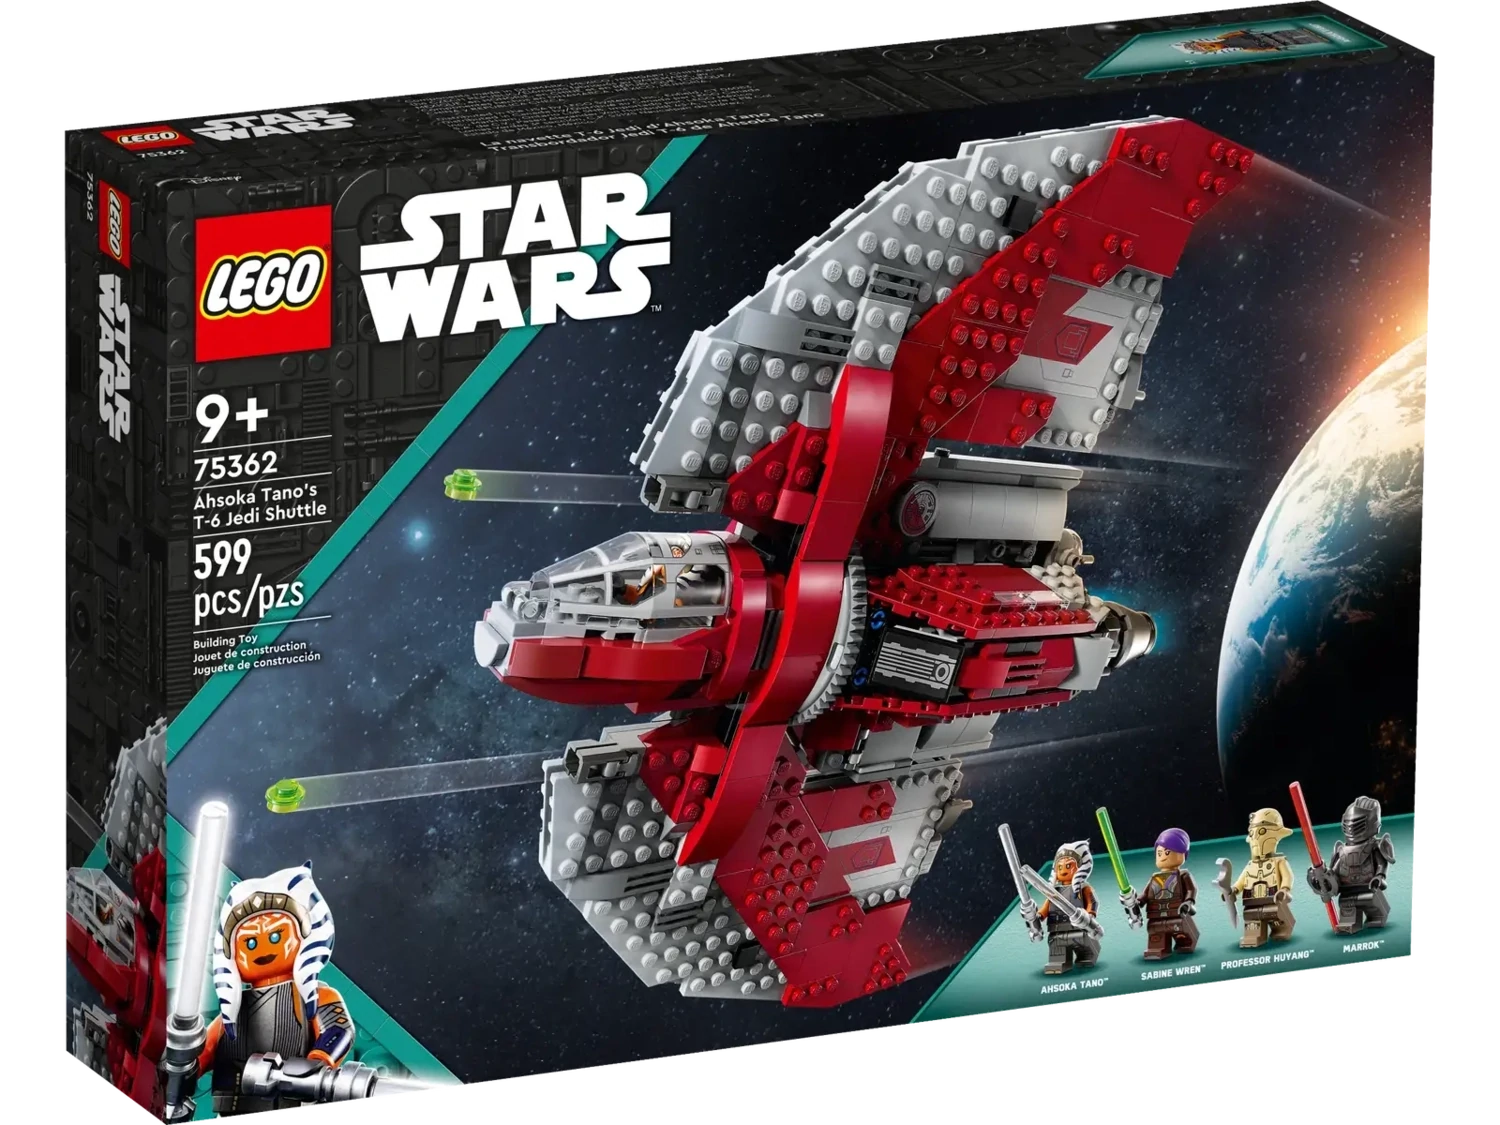 Lego 75362 Star Wars Ahsoka Tano's T-6 Jedi Shuttle